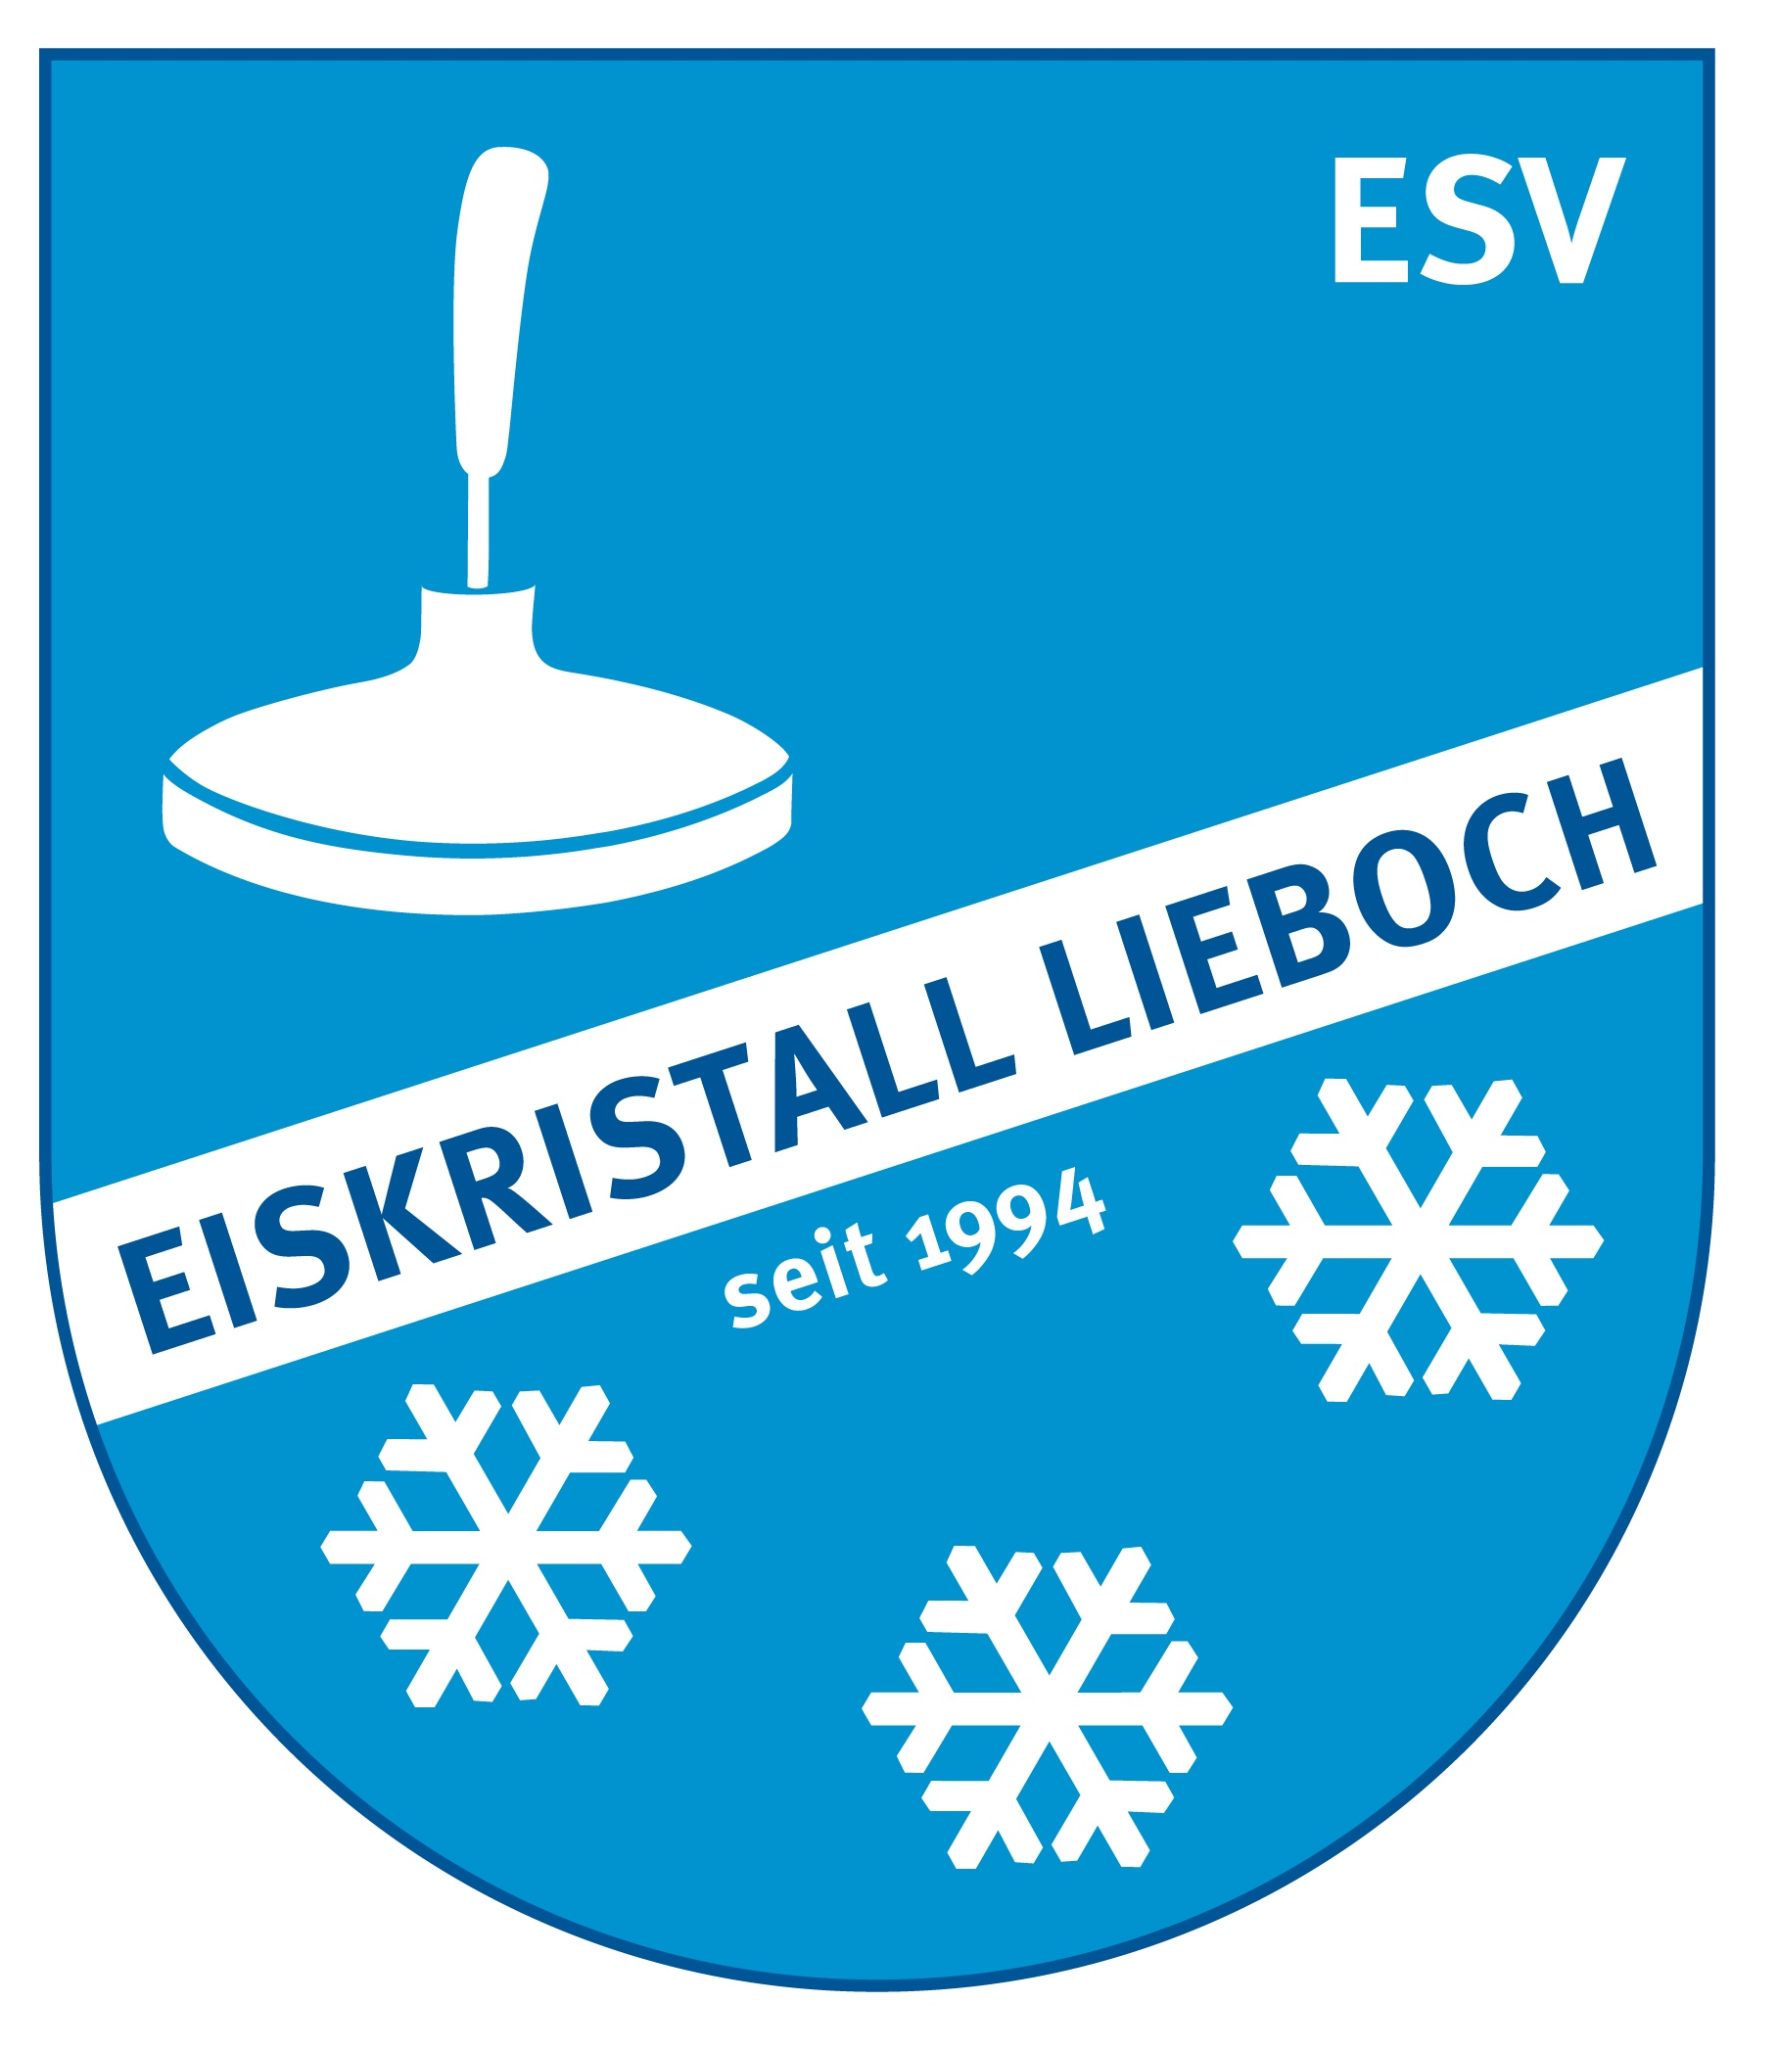 Logo ESV Eiskristall Lieboch 1